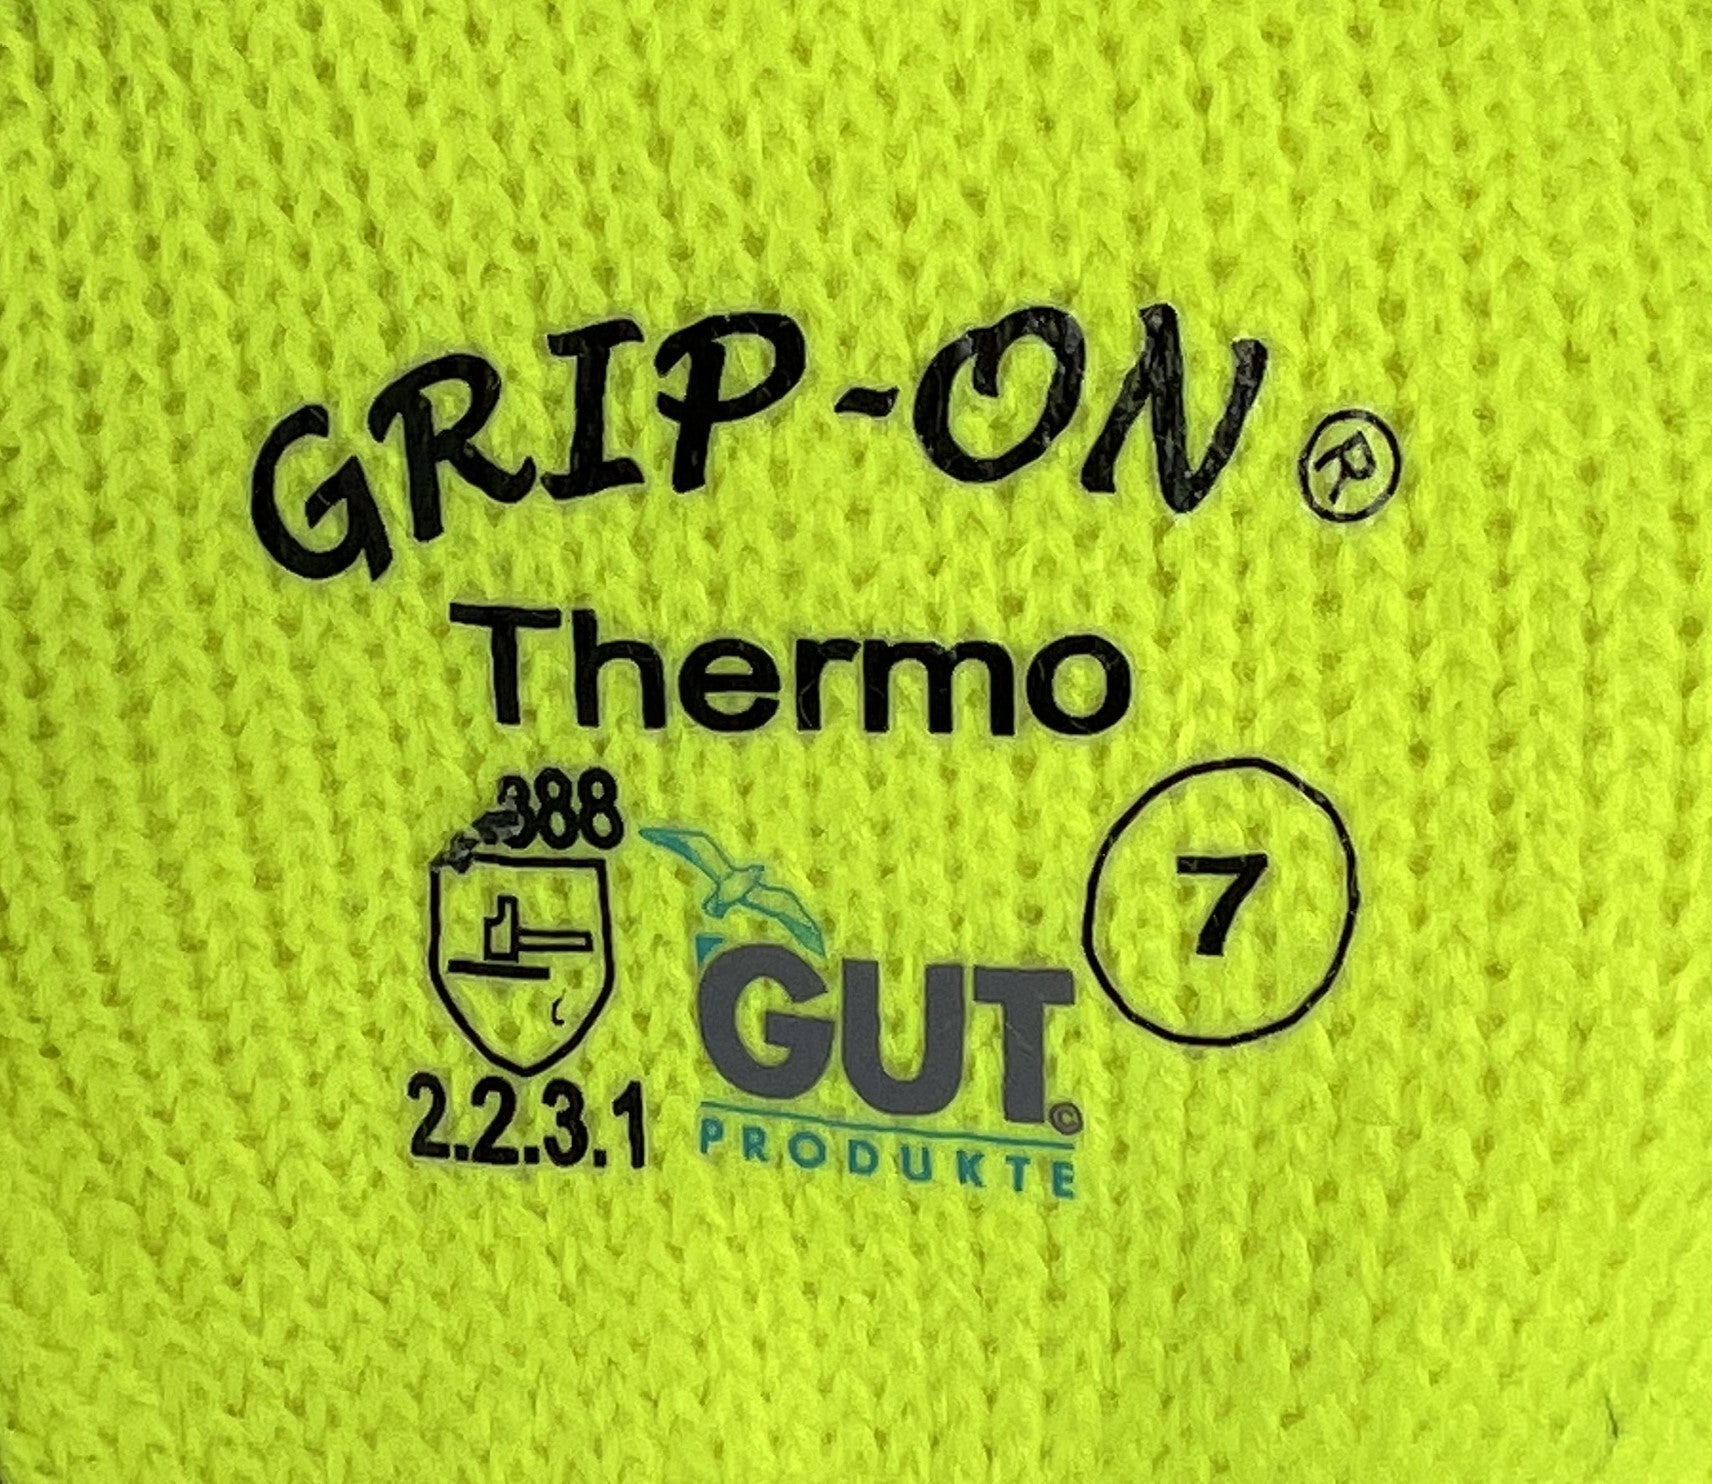 Winterhandschuh GUT GRIP-ON Thermo gelb